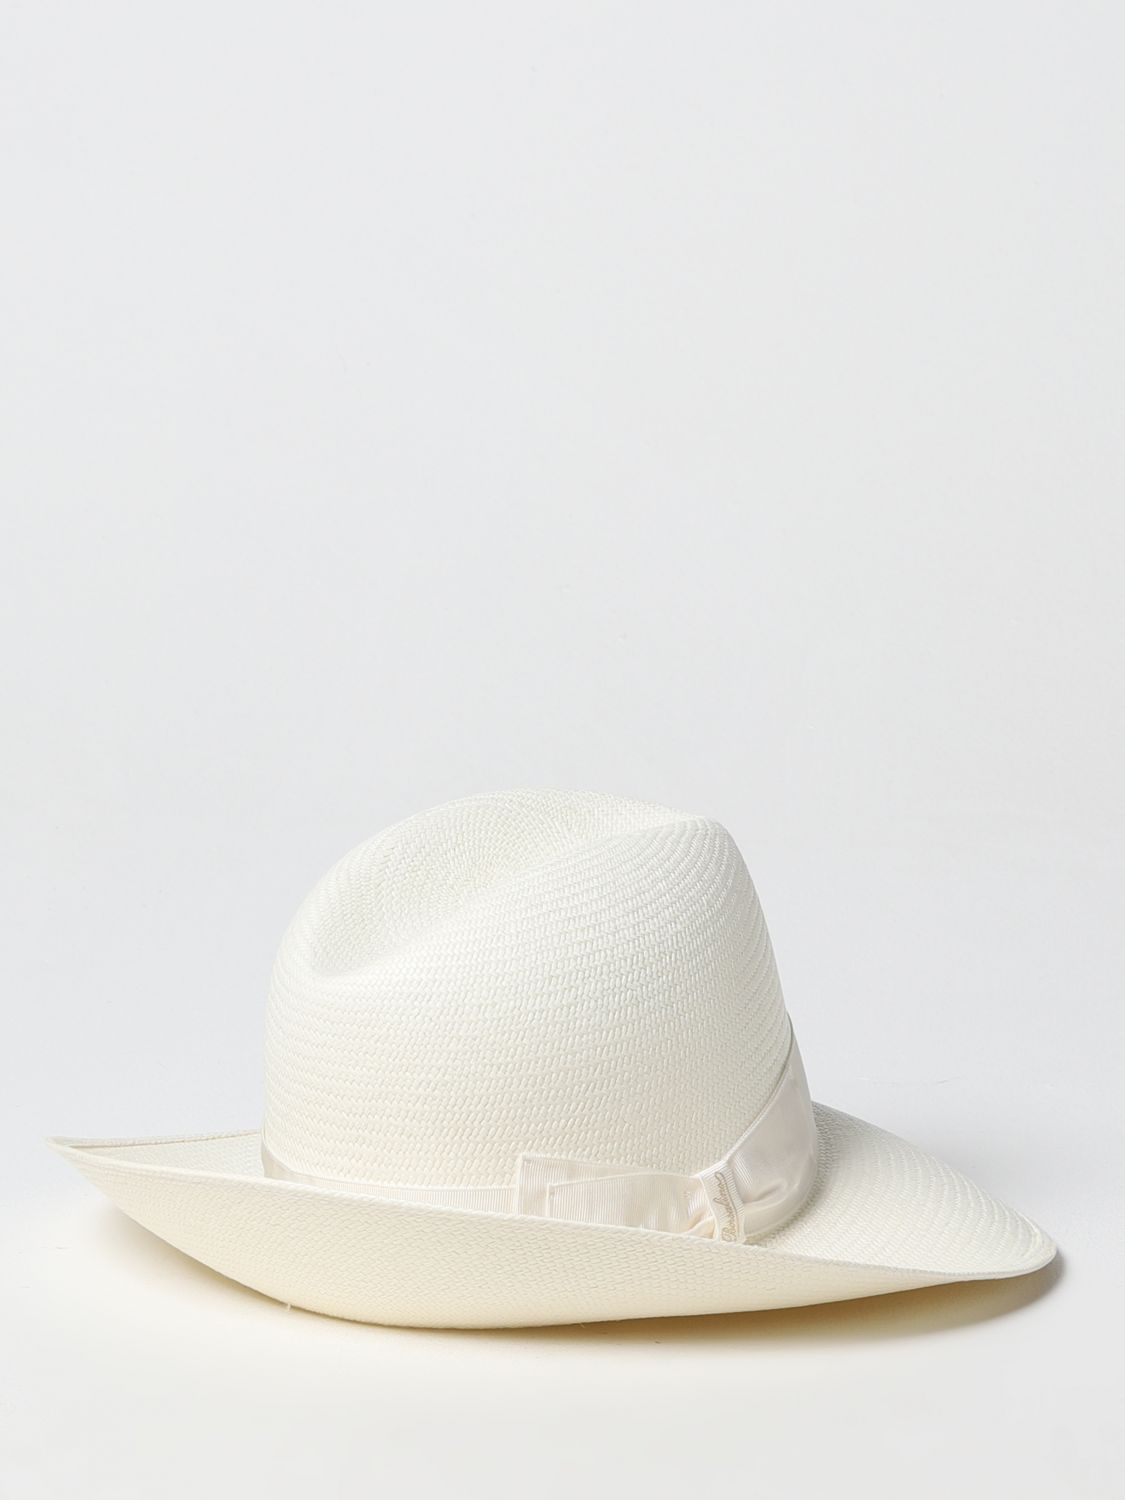 Hat Borsalino: Borsalino hat for women yellow cream 2